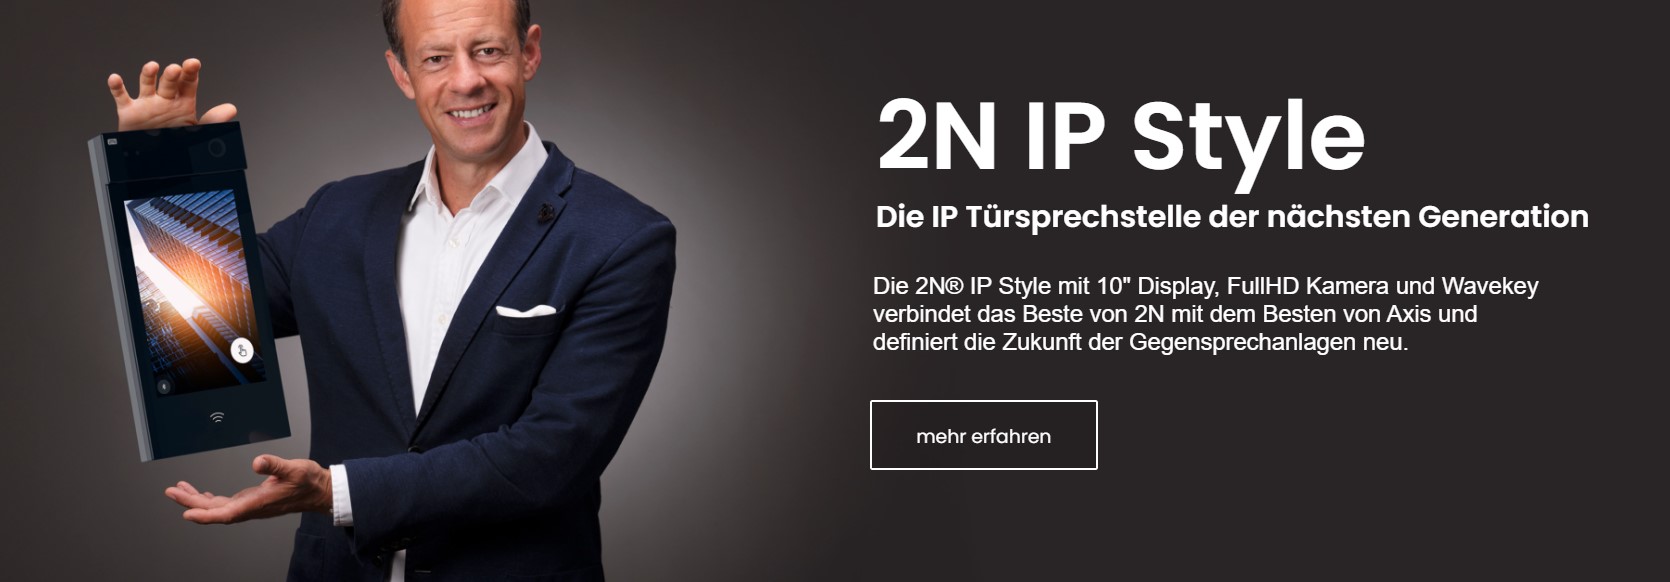 2N IP Style